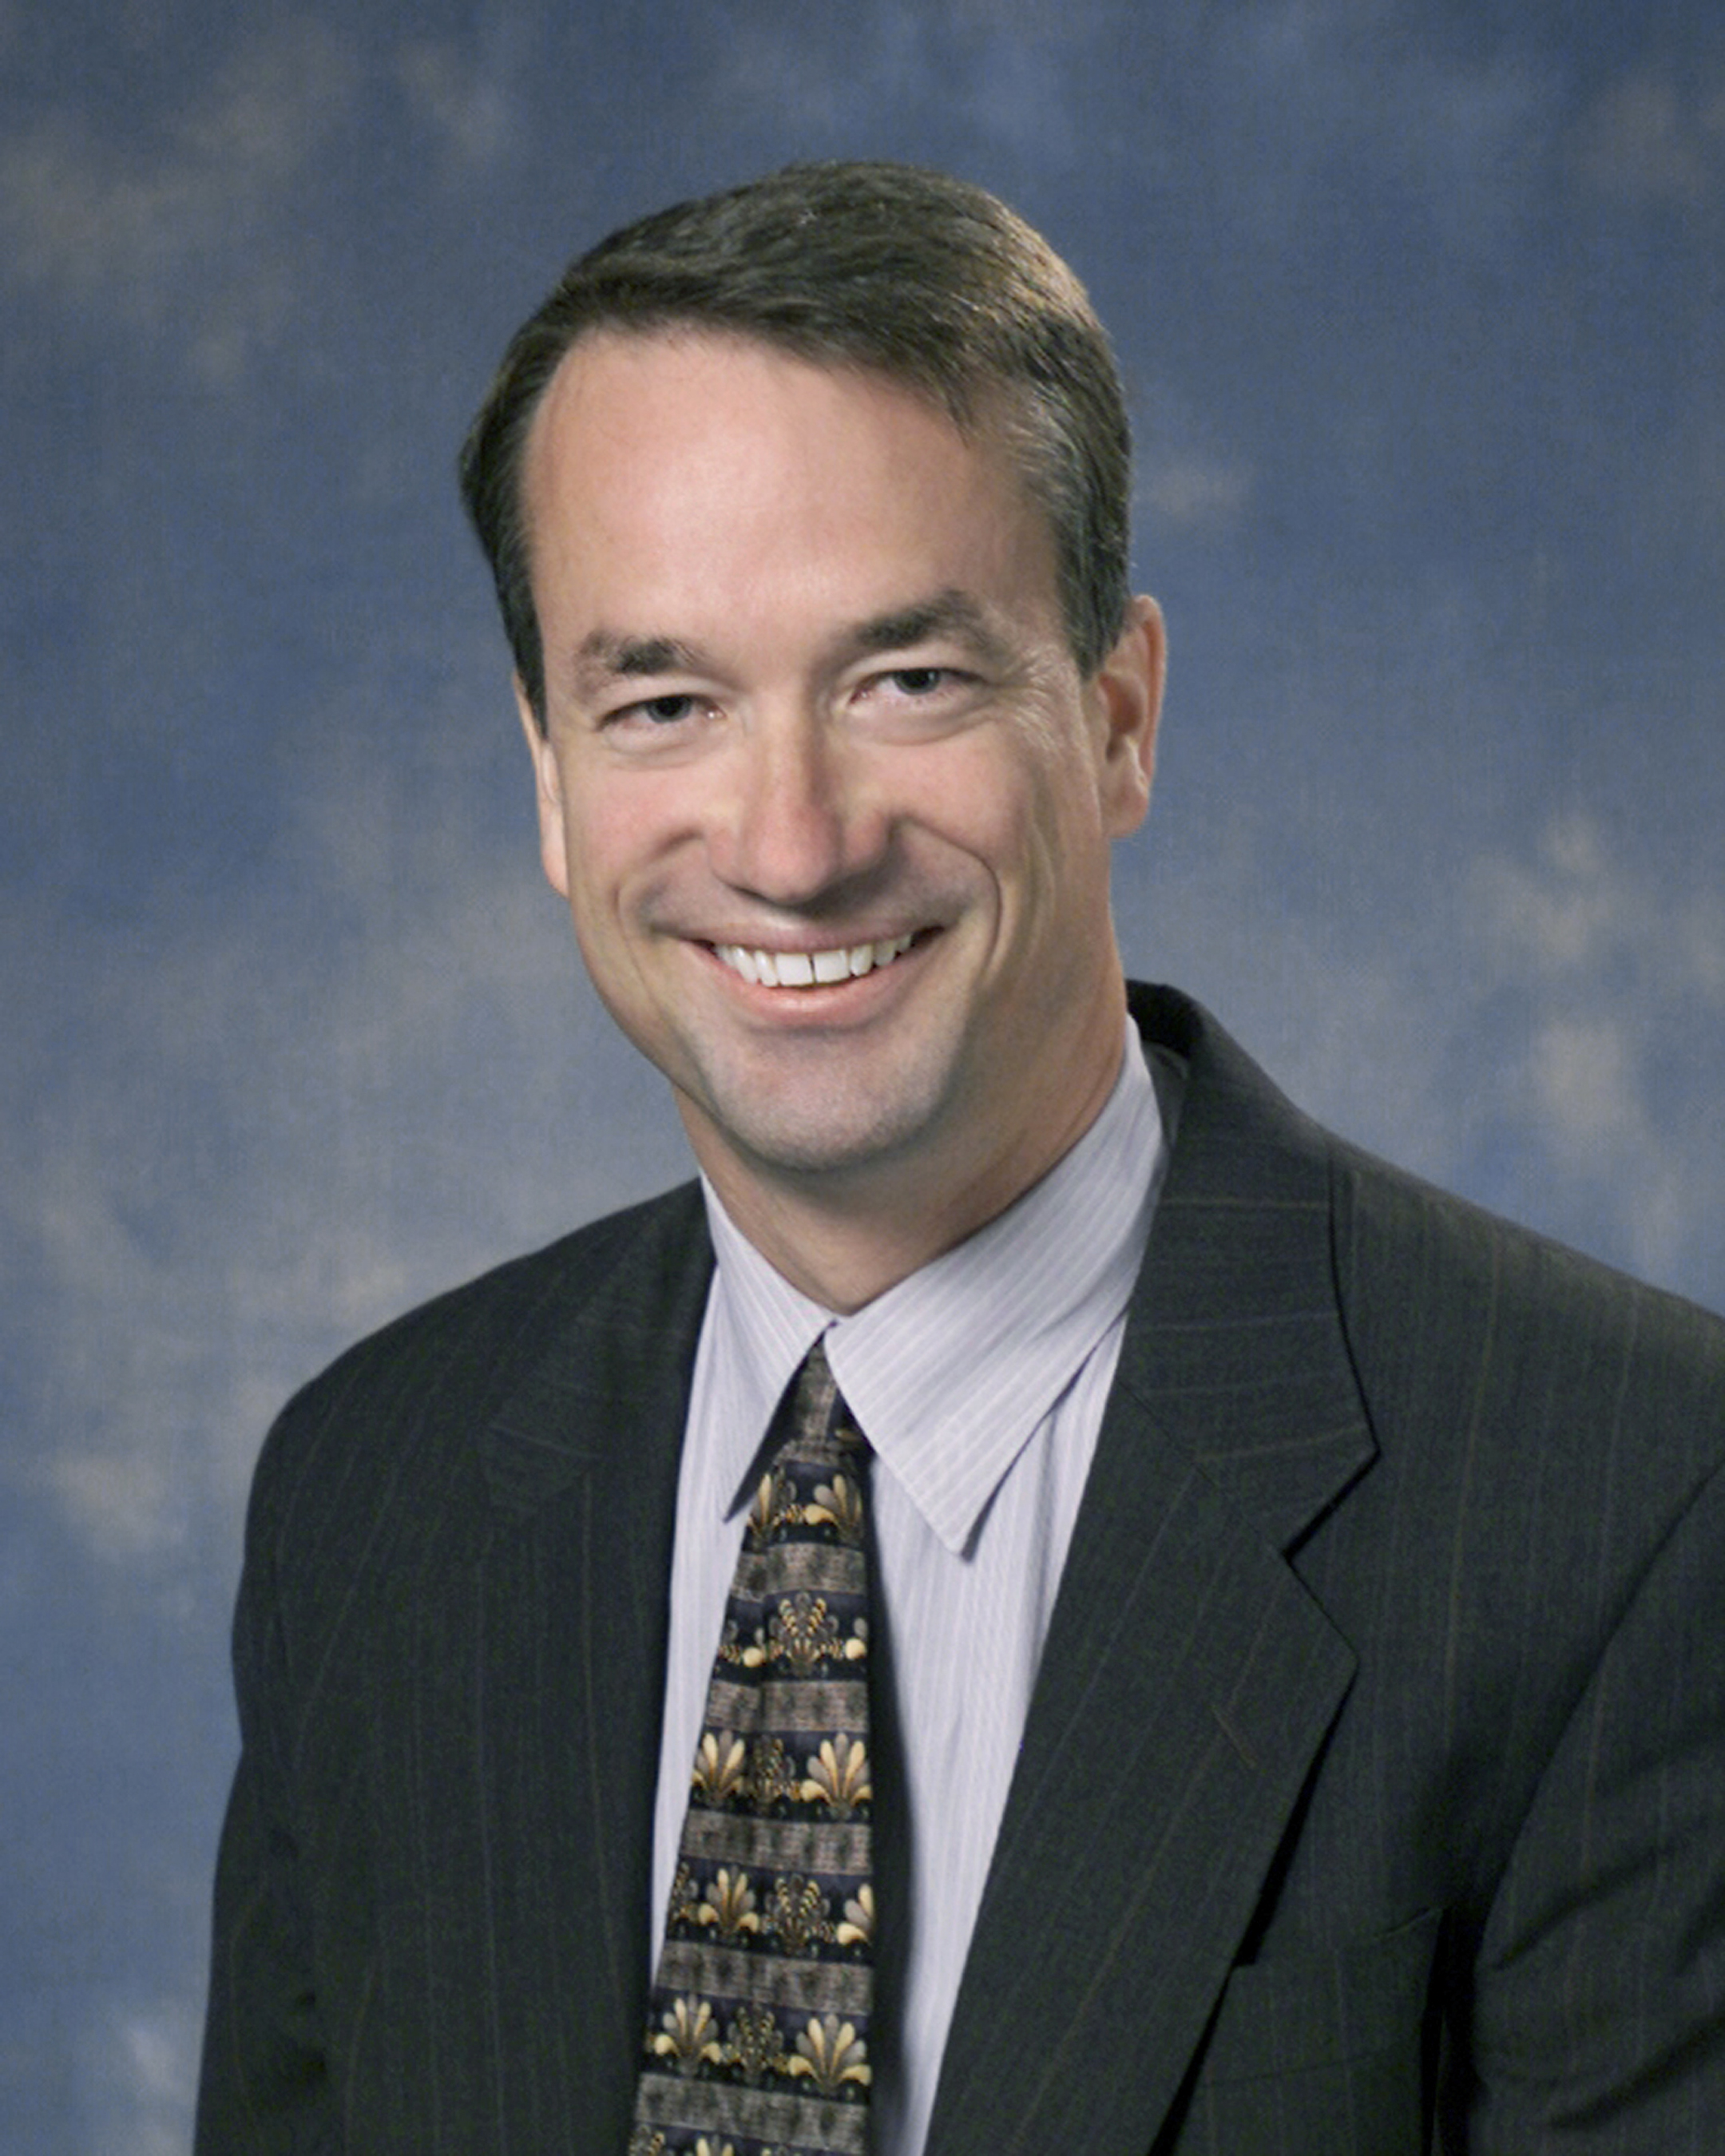 David Rosener, Vice President